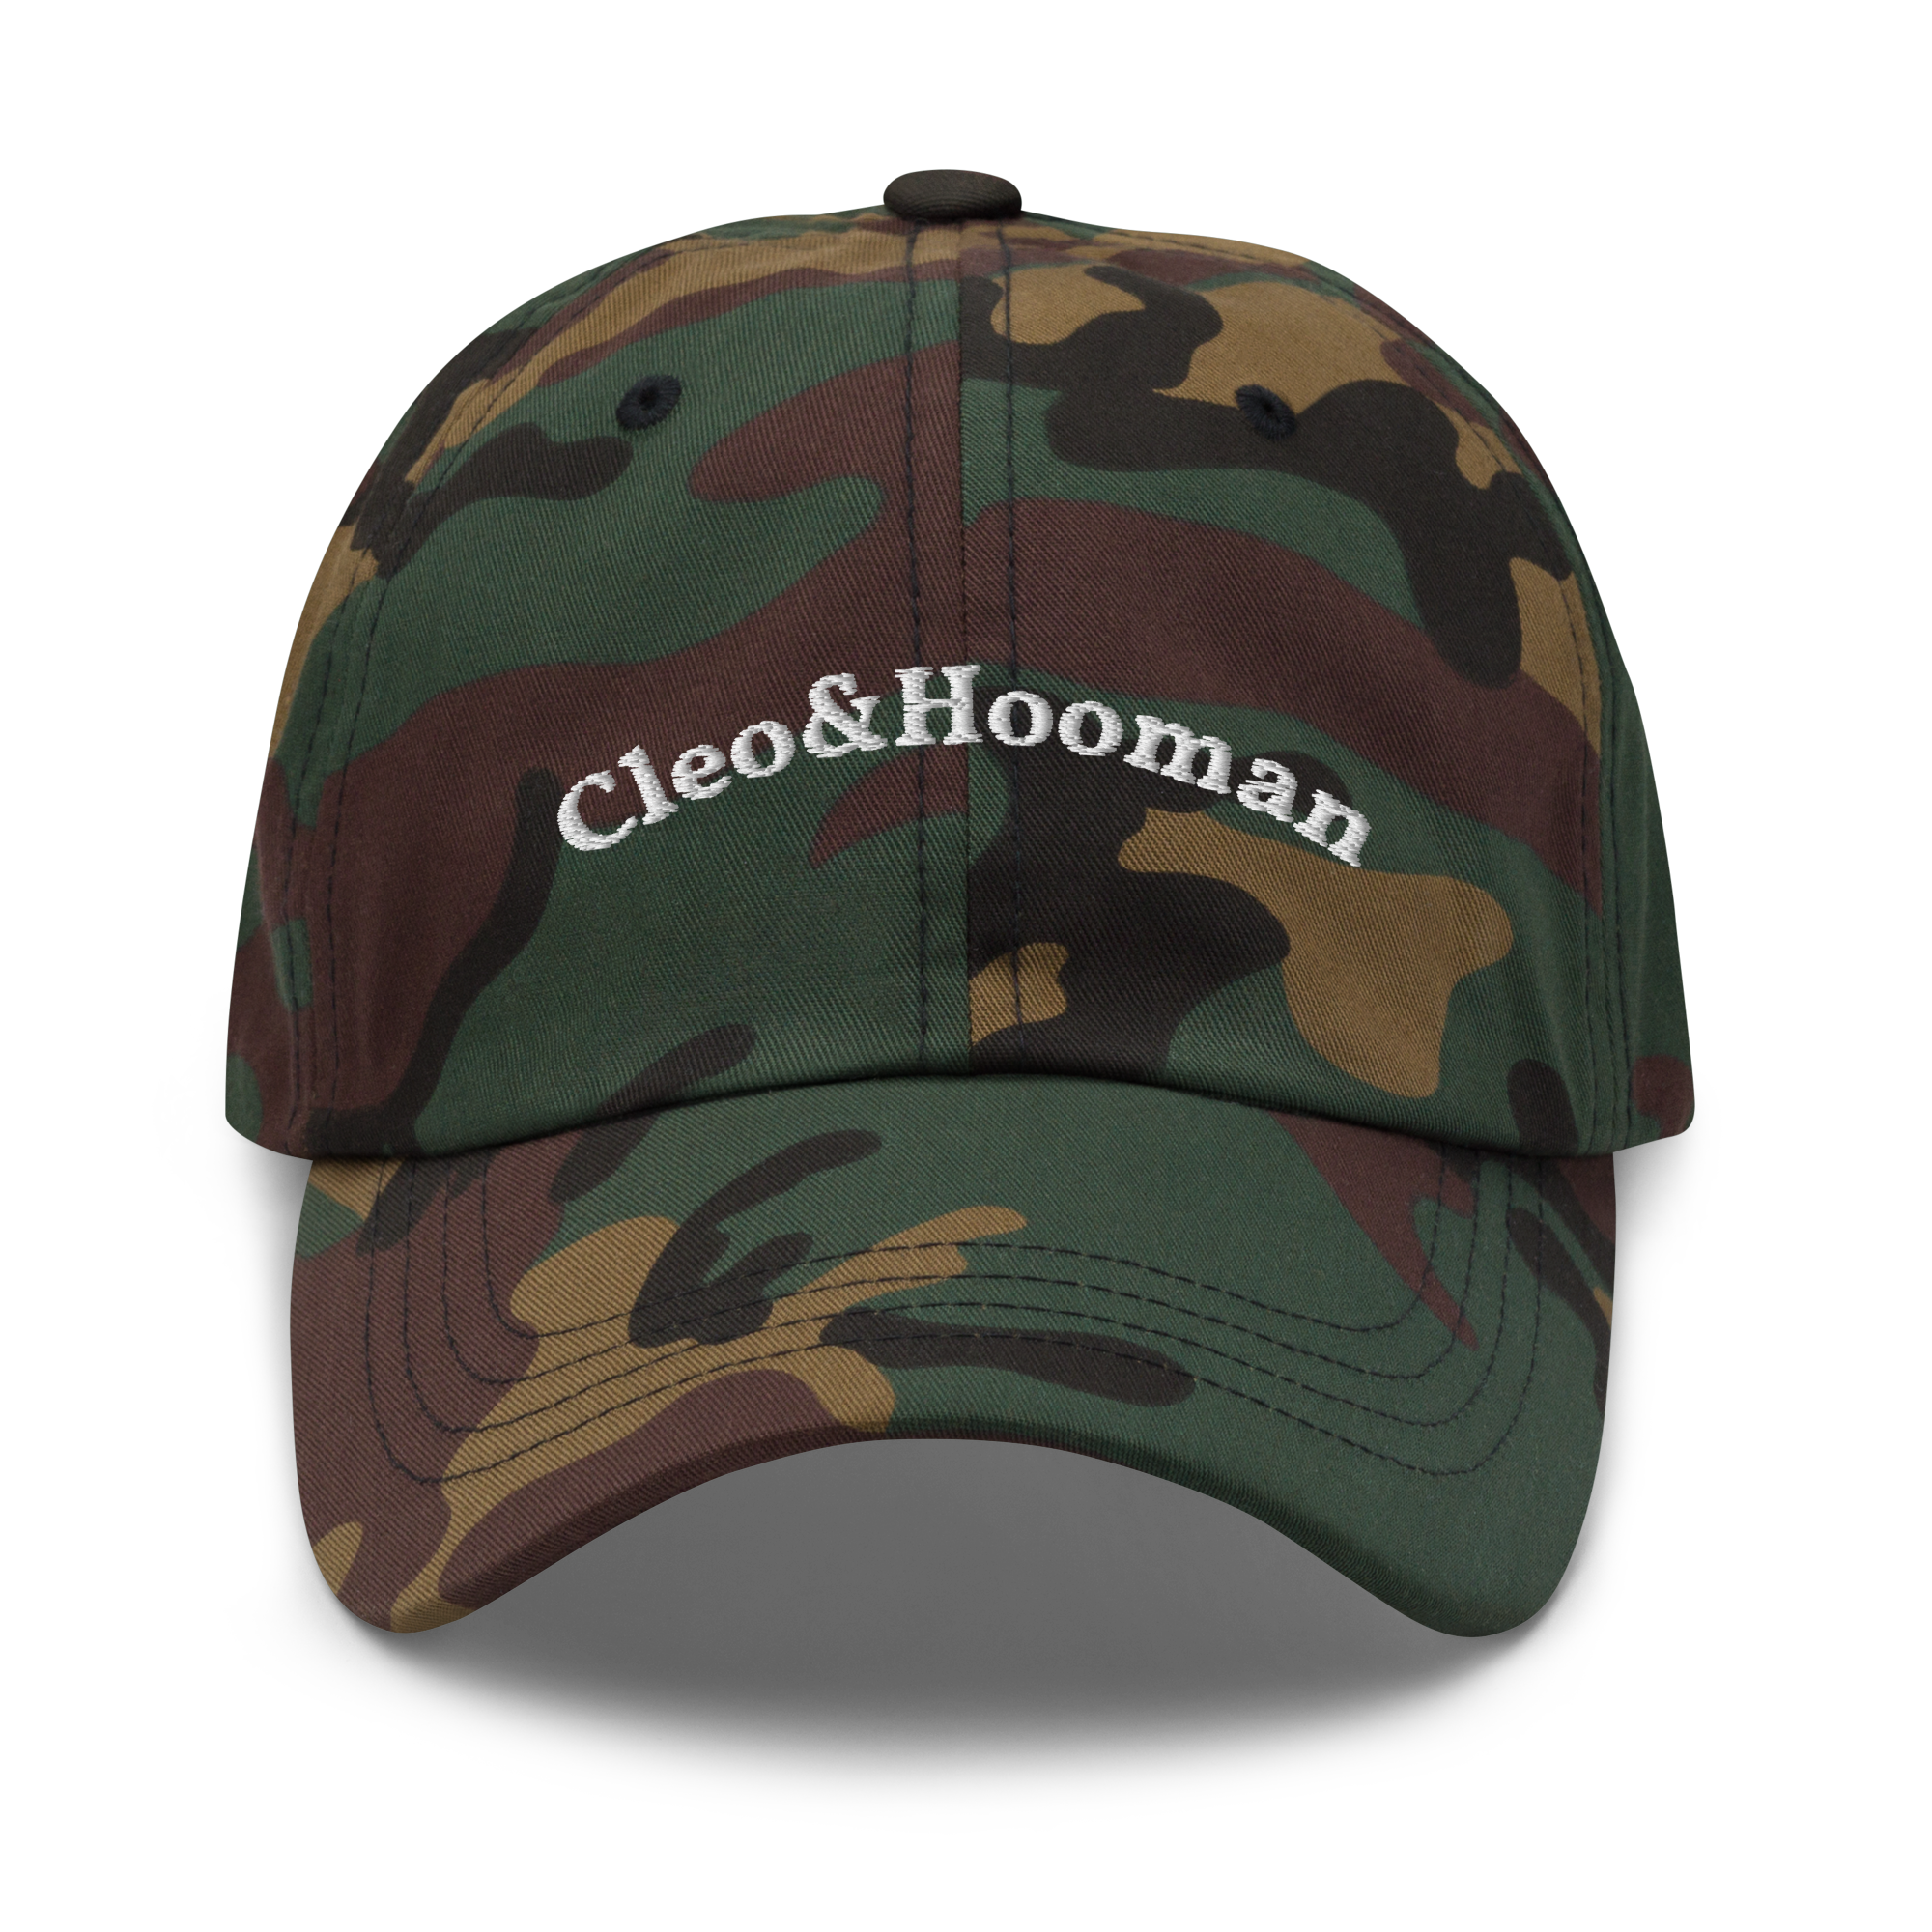 Cleo&Hooman Dad hat